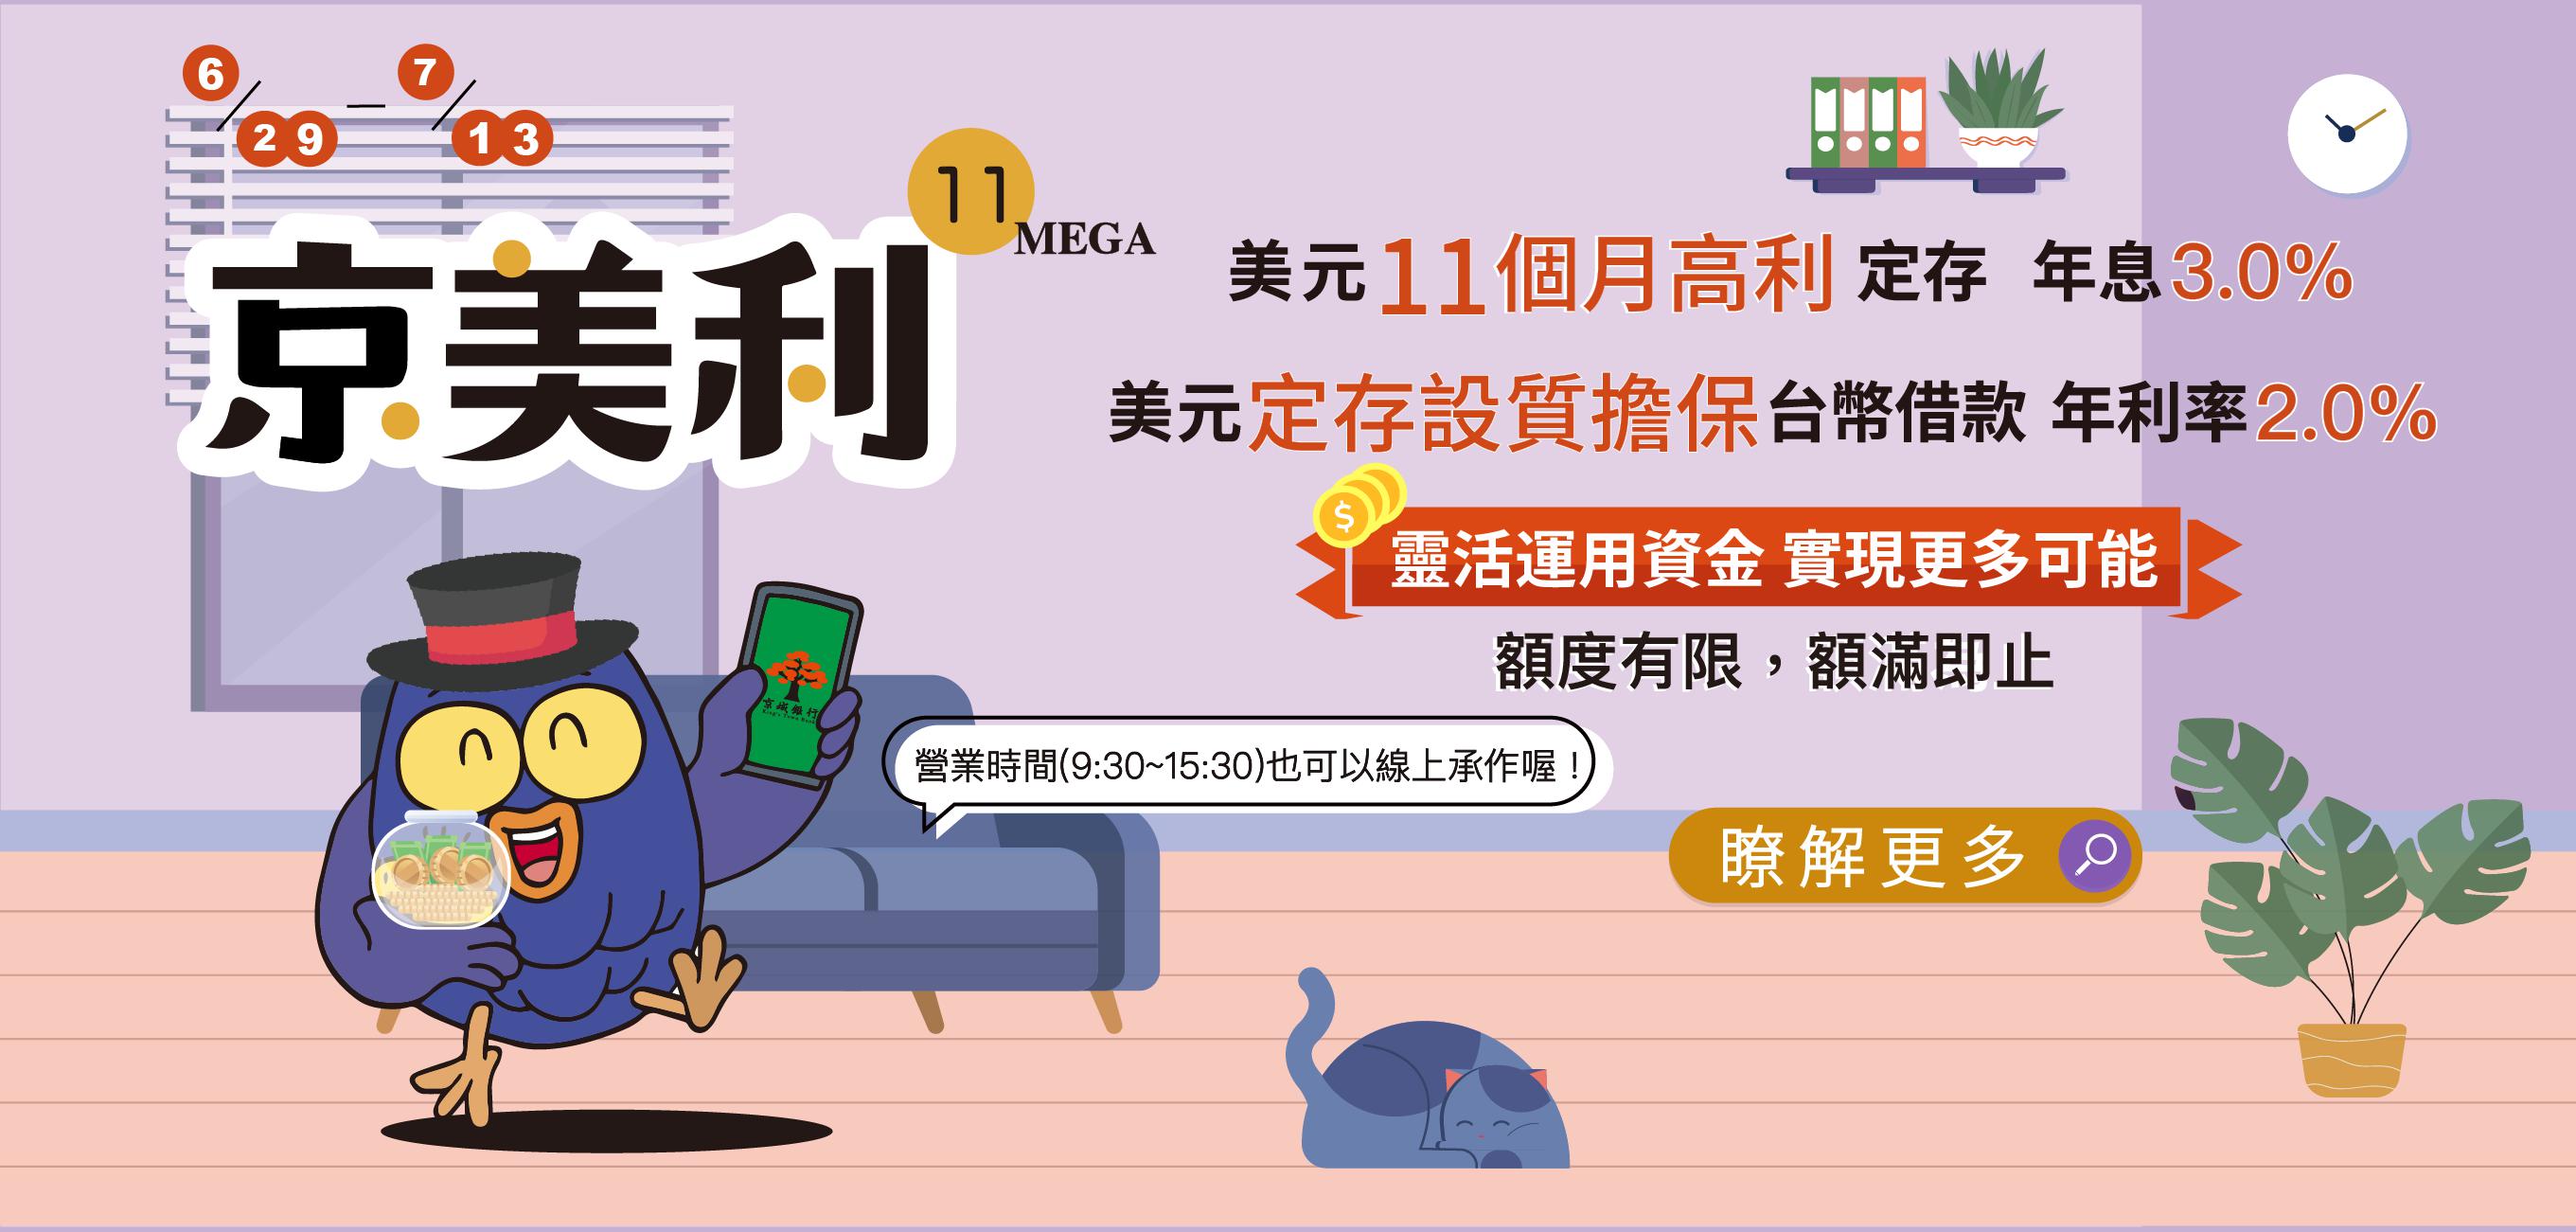 京美利11 Mega –美元十一個月高利定存、美元定存設質擔保台幣借款